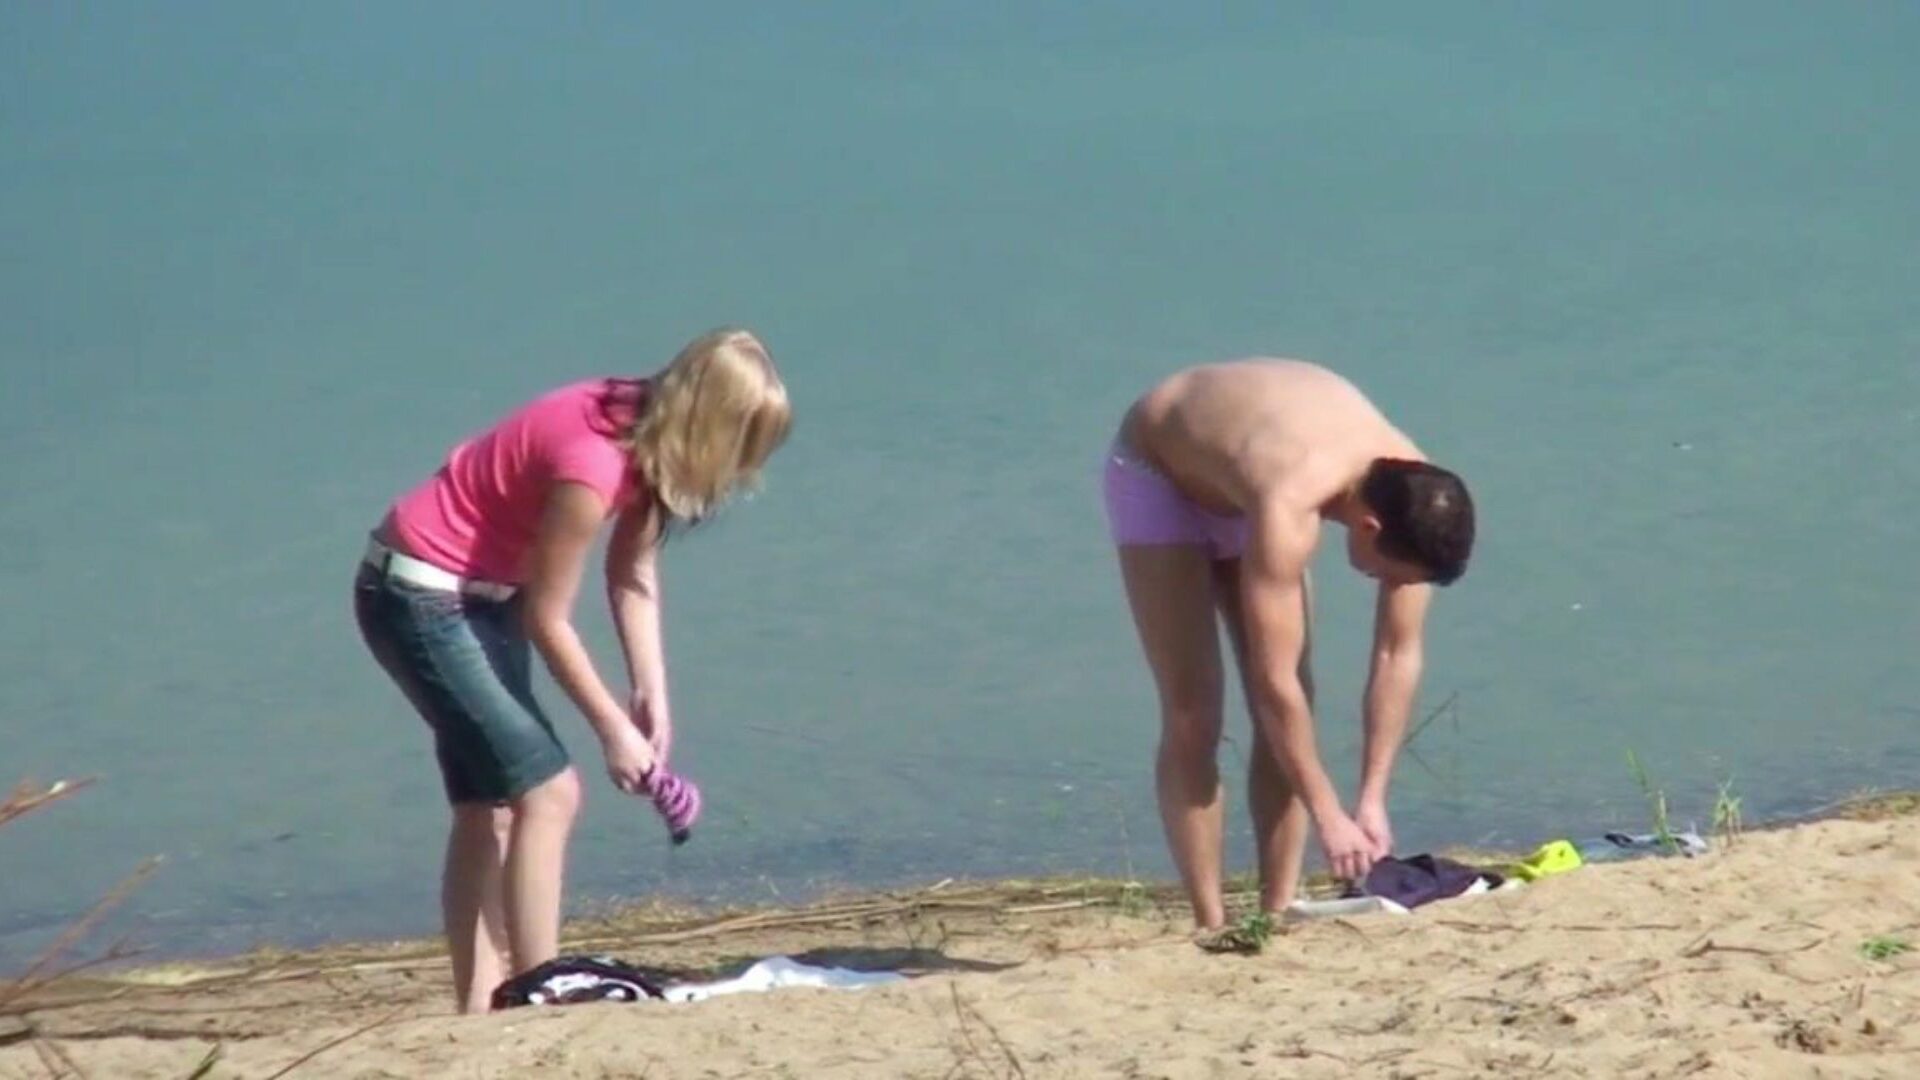 cuplu de adolescenți reali pe dracu 'voyeur pe plajă germană de străin urmăriți cuplu de adolescenți reali pe dracu' voyeur de plajă germană de străin episod pe xhamster - selecția finală de videoclipuri gratuite cu videoclipuri porno porno hd & pentru toți